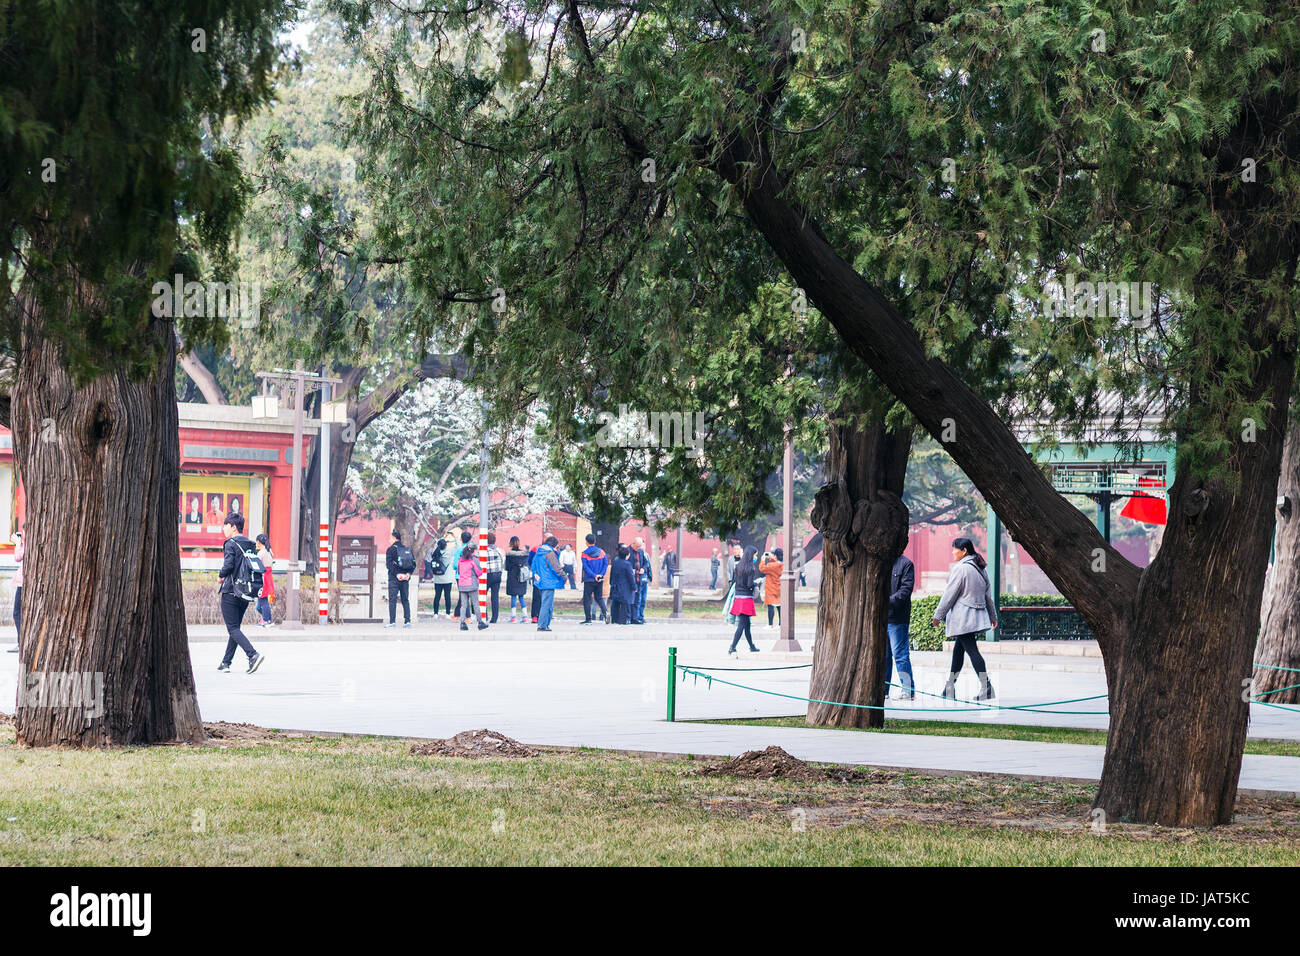 Pechino, Cina - 19 Marzo 2017: i visitatori nel lavoro culturale del popolo (Palazzo Imperiale sala ancestrale) parco pubblico di Pechino città imperiale in primavera Foto Stock